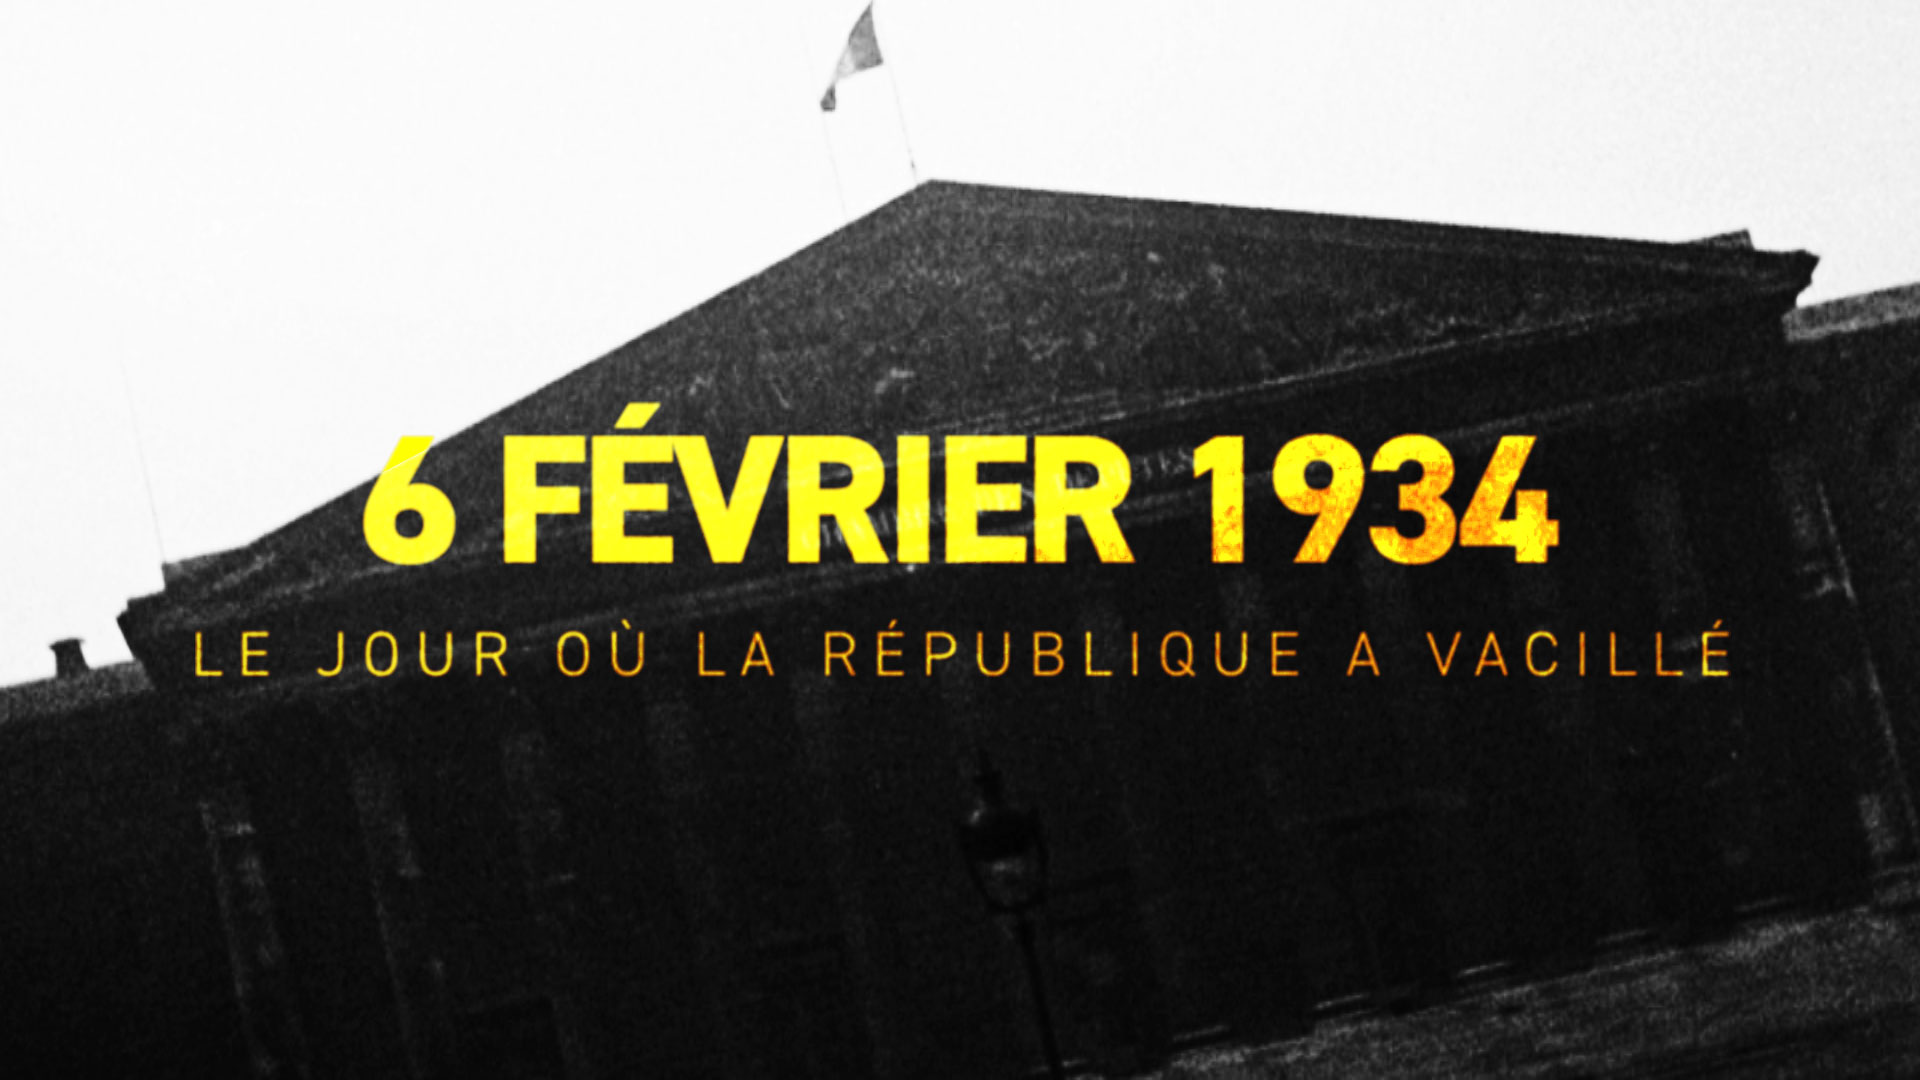 6 FÉVRIER 1934 LE JOUR OÚ LA RÉPUBLIQUE A VACILLÉ // FRANCE 5